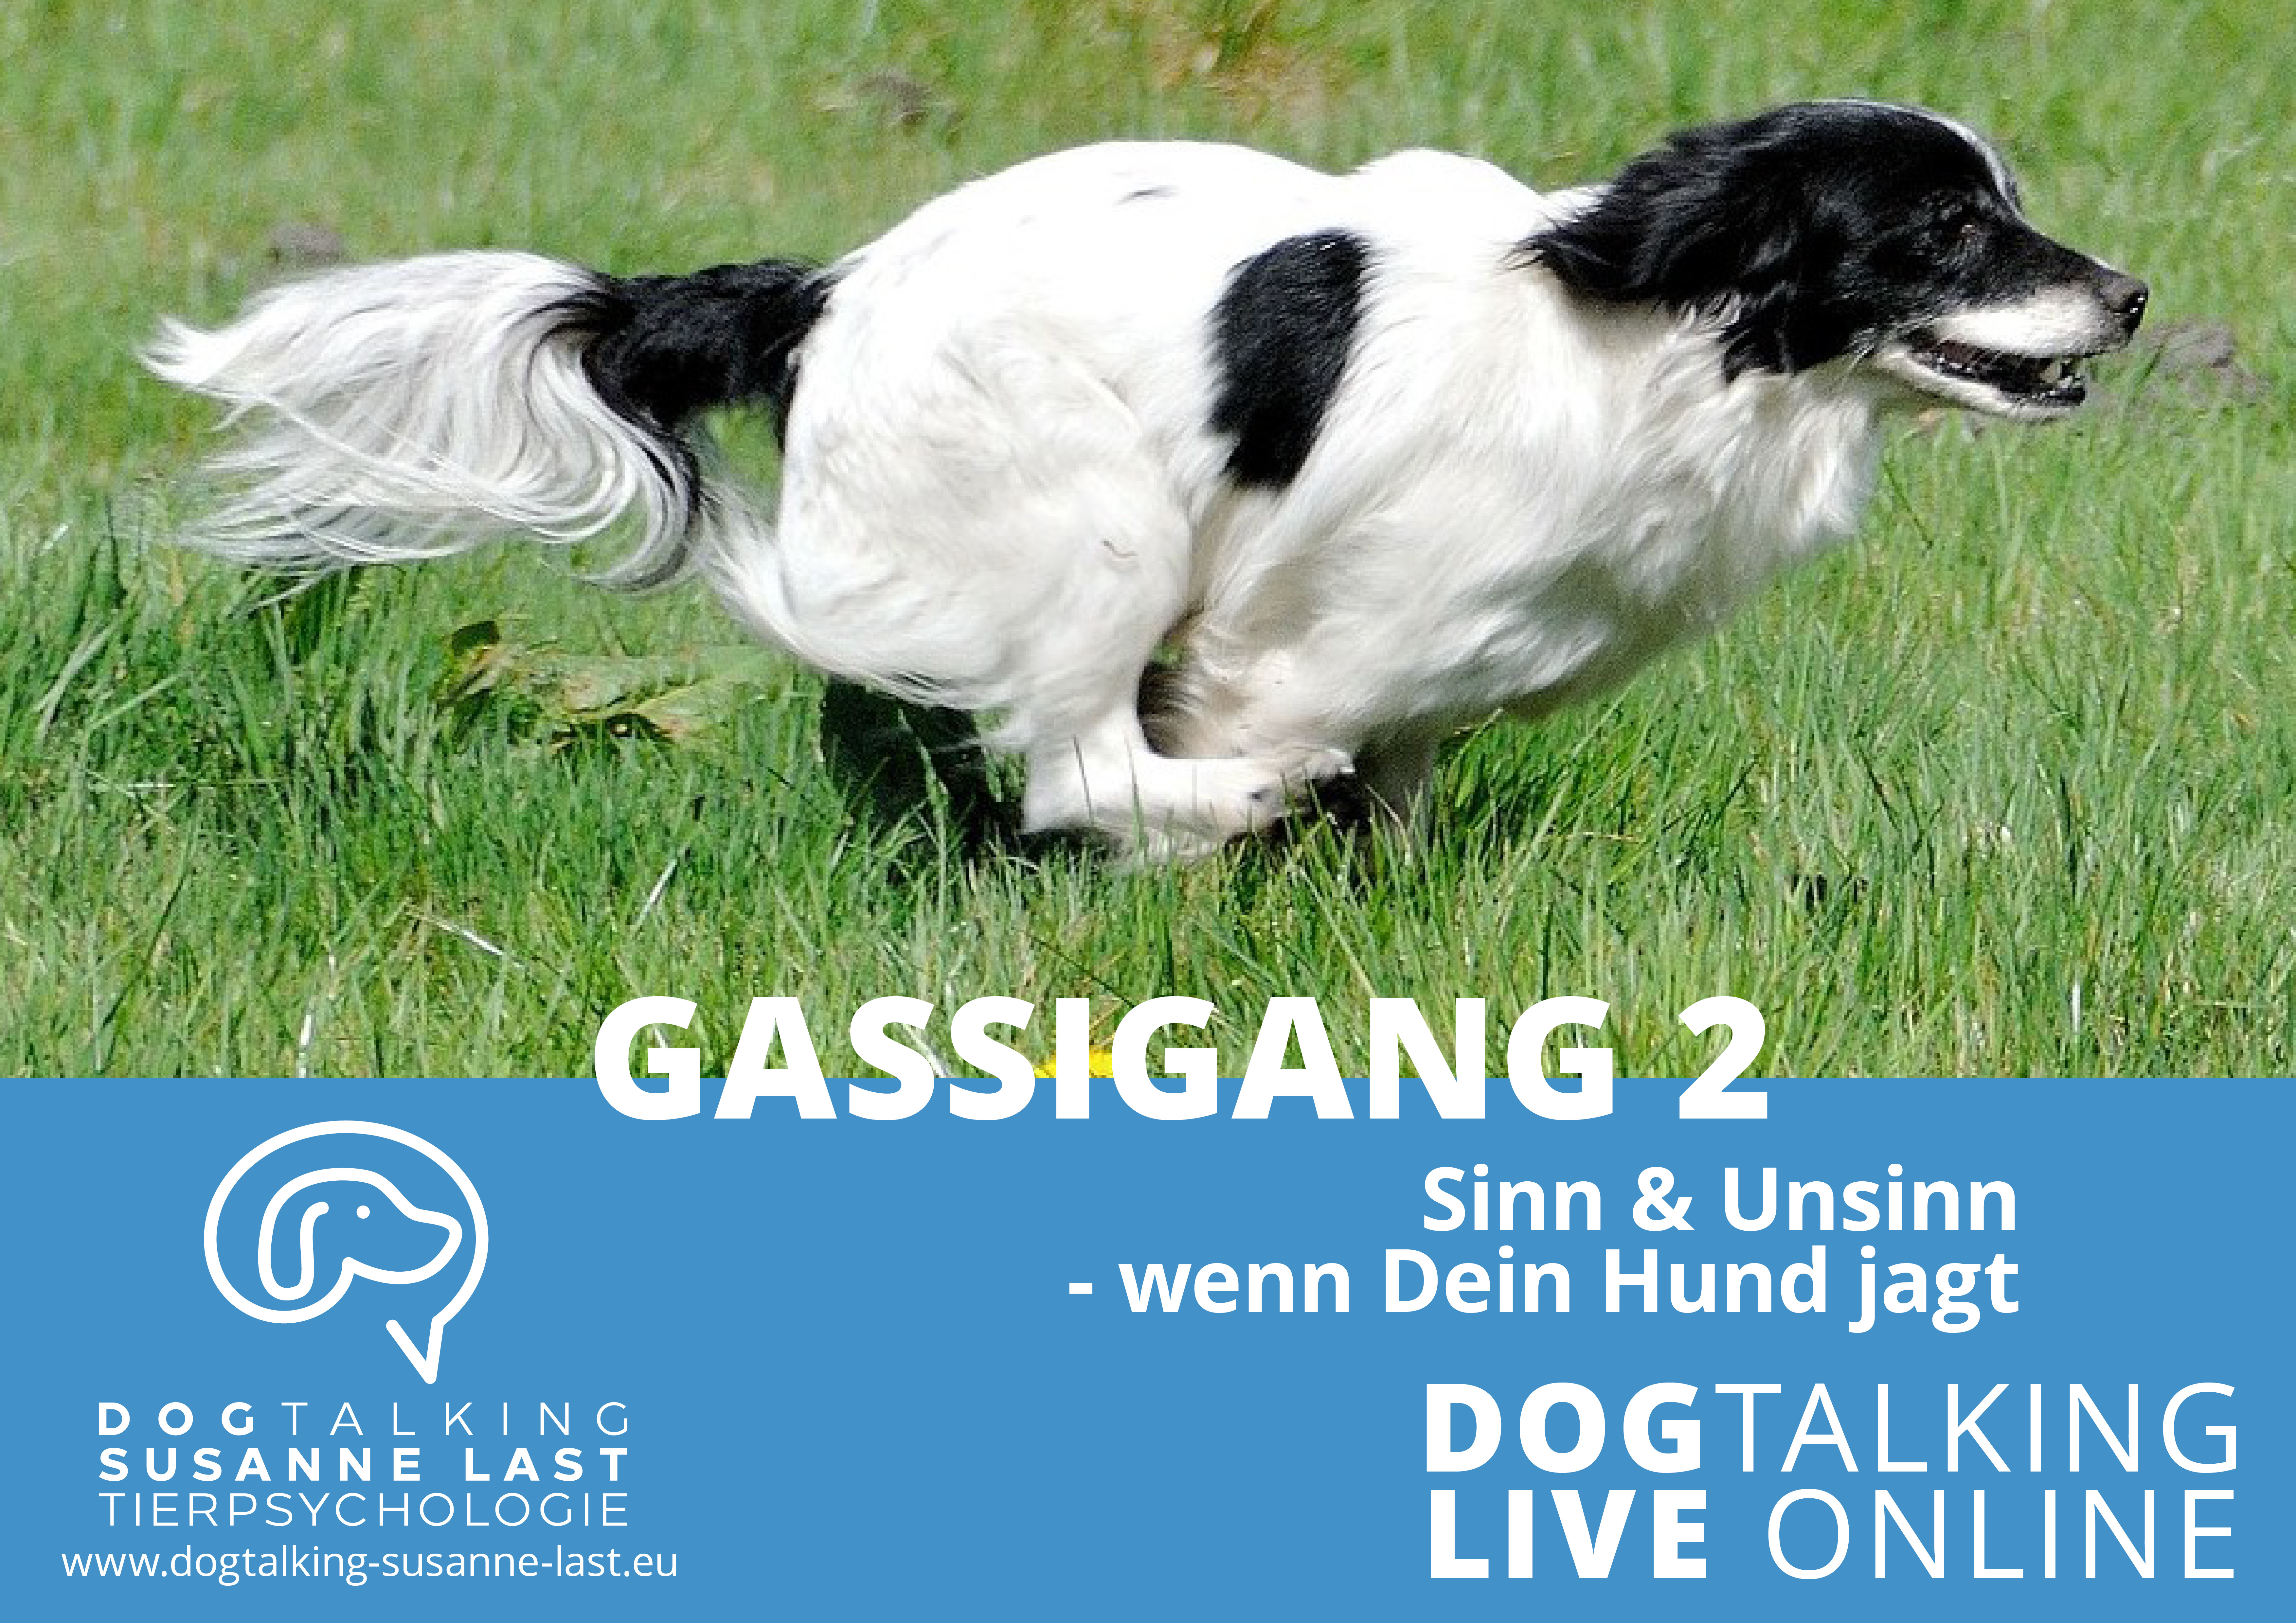 Gassigang 2 - Wenn Dein Hund jagt DOGTALKING live online Aufzeichnung 